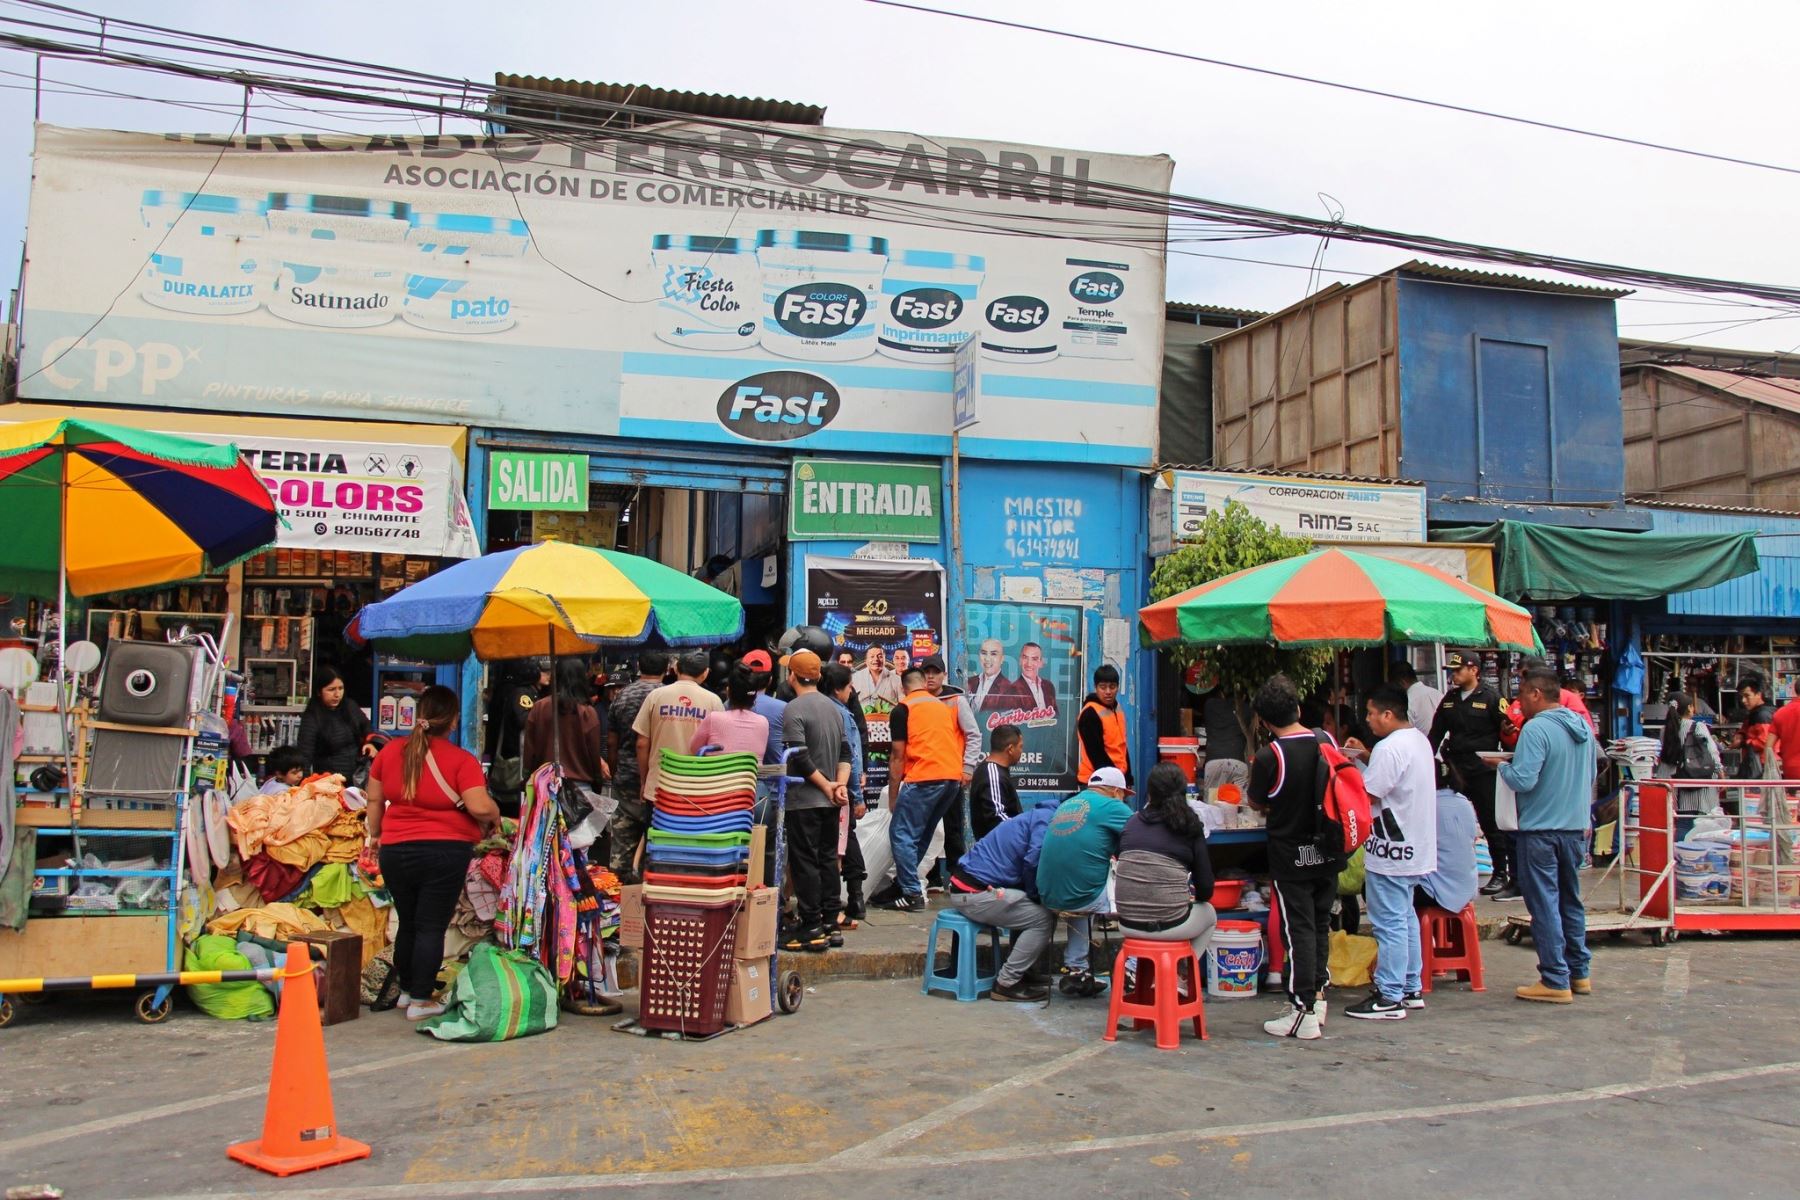 El mercado El Ferrocarril se encuentra en pleno centro de la ciudad de Chimbote. Foto: Cortesía Gonzalo Horna